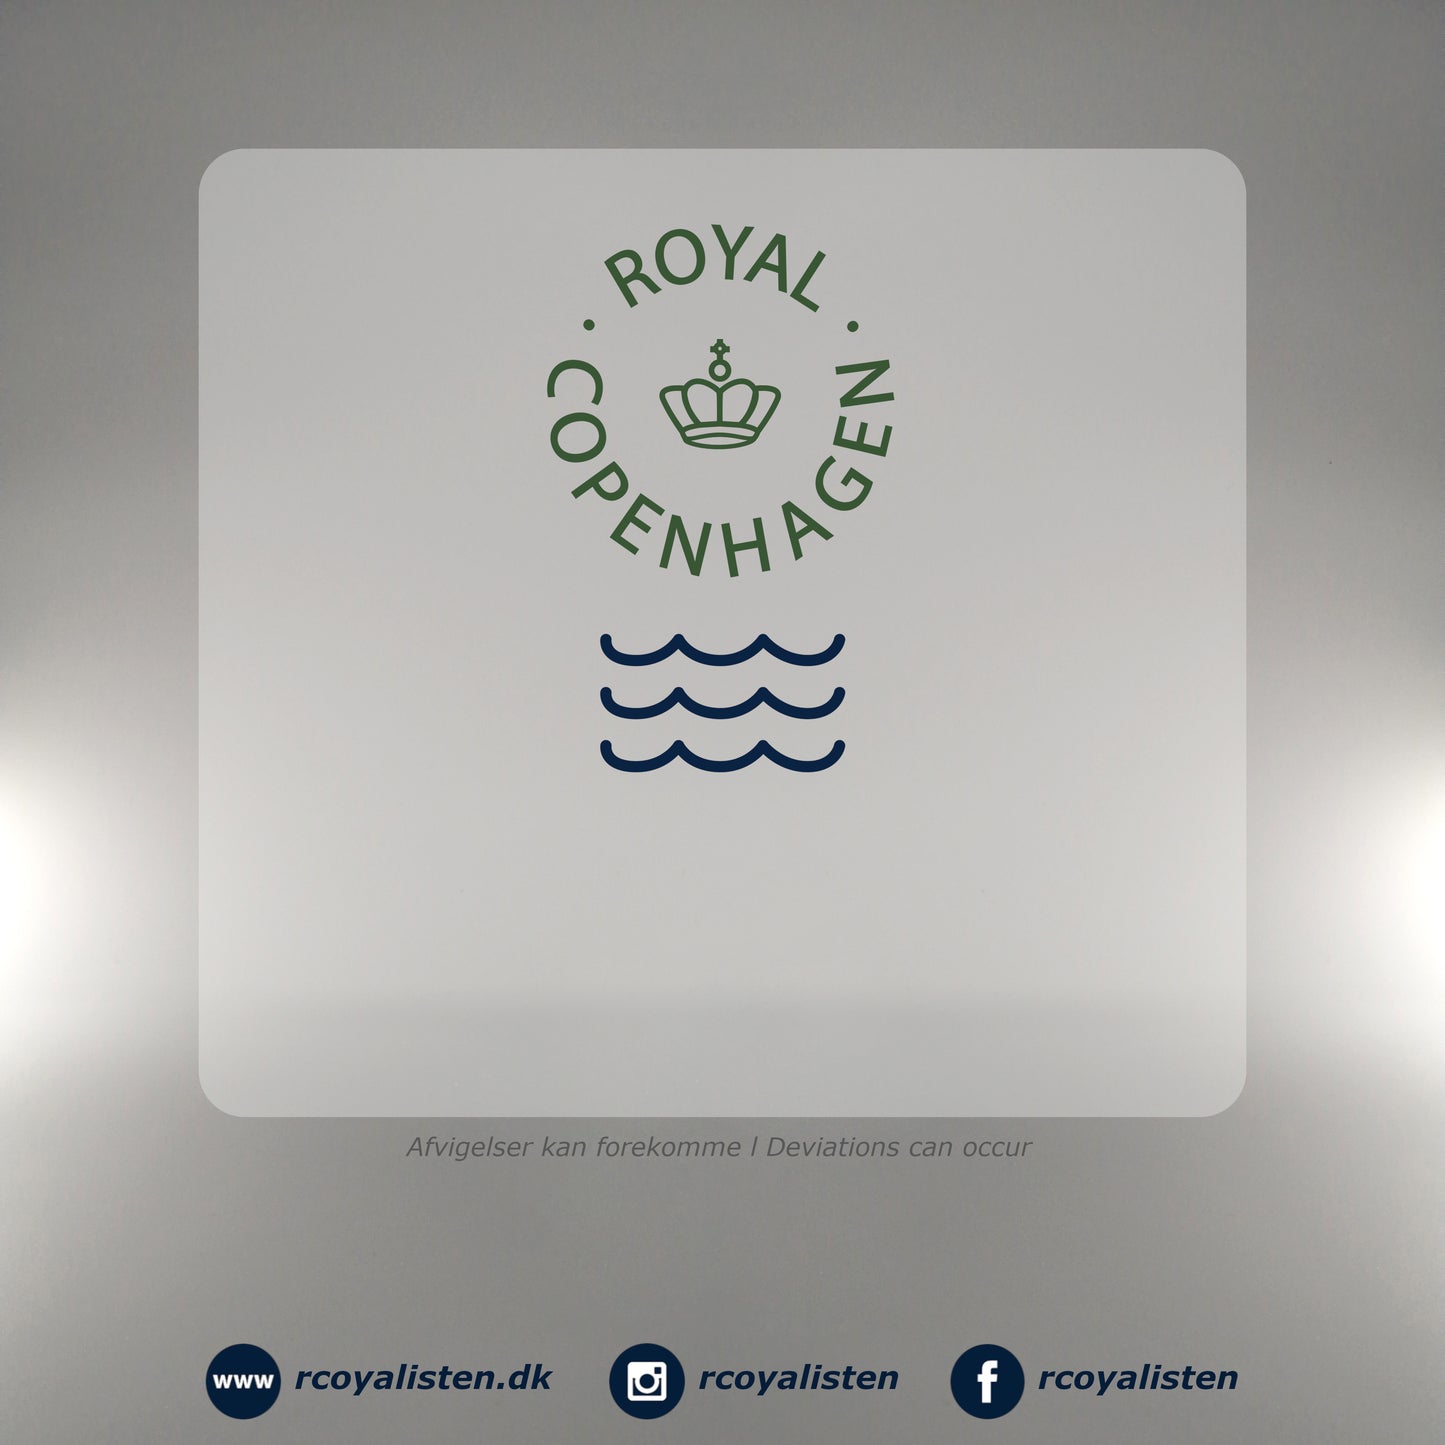 Royal Copenhagen Bonbonniere - Daisy - RCoyalisten.dk